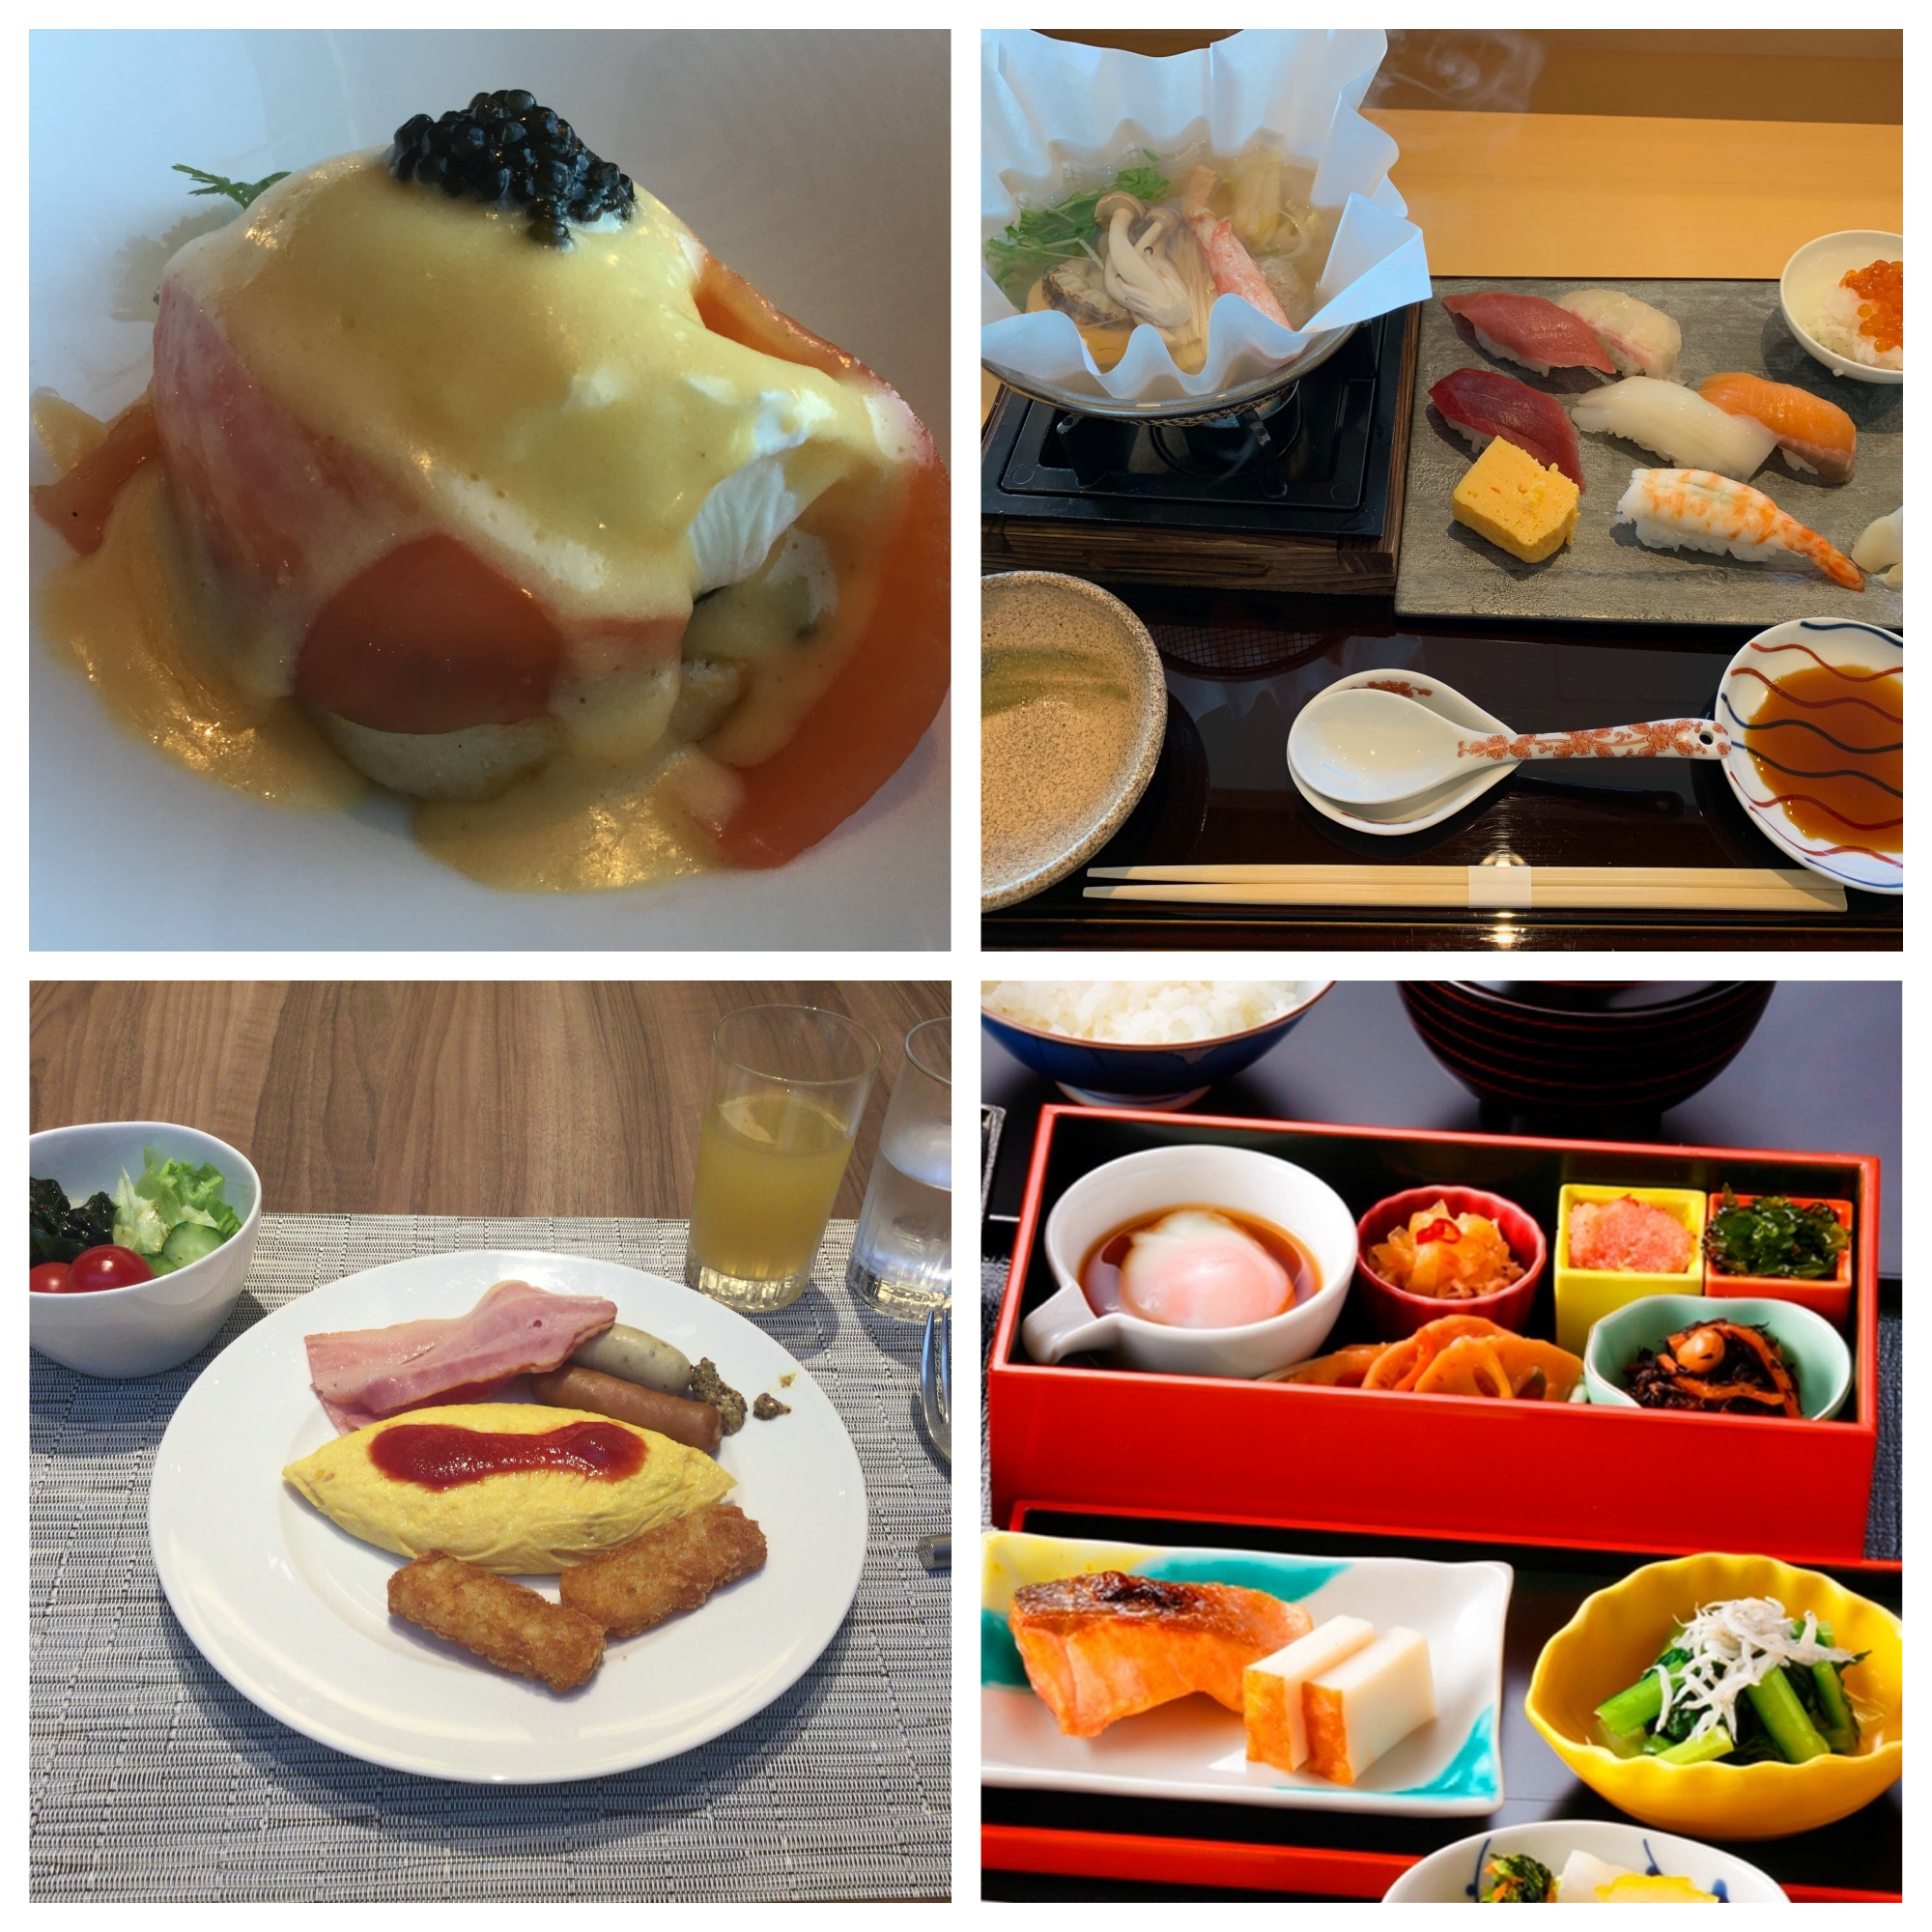 ホテルグランドニッコー東京台場は朝食を５種類から選択可能 ブッフェから寿司まで 陸マイラー医師の隠密sfc修行